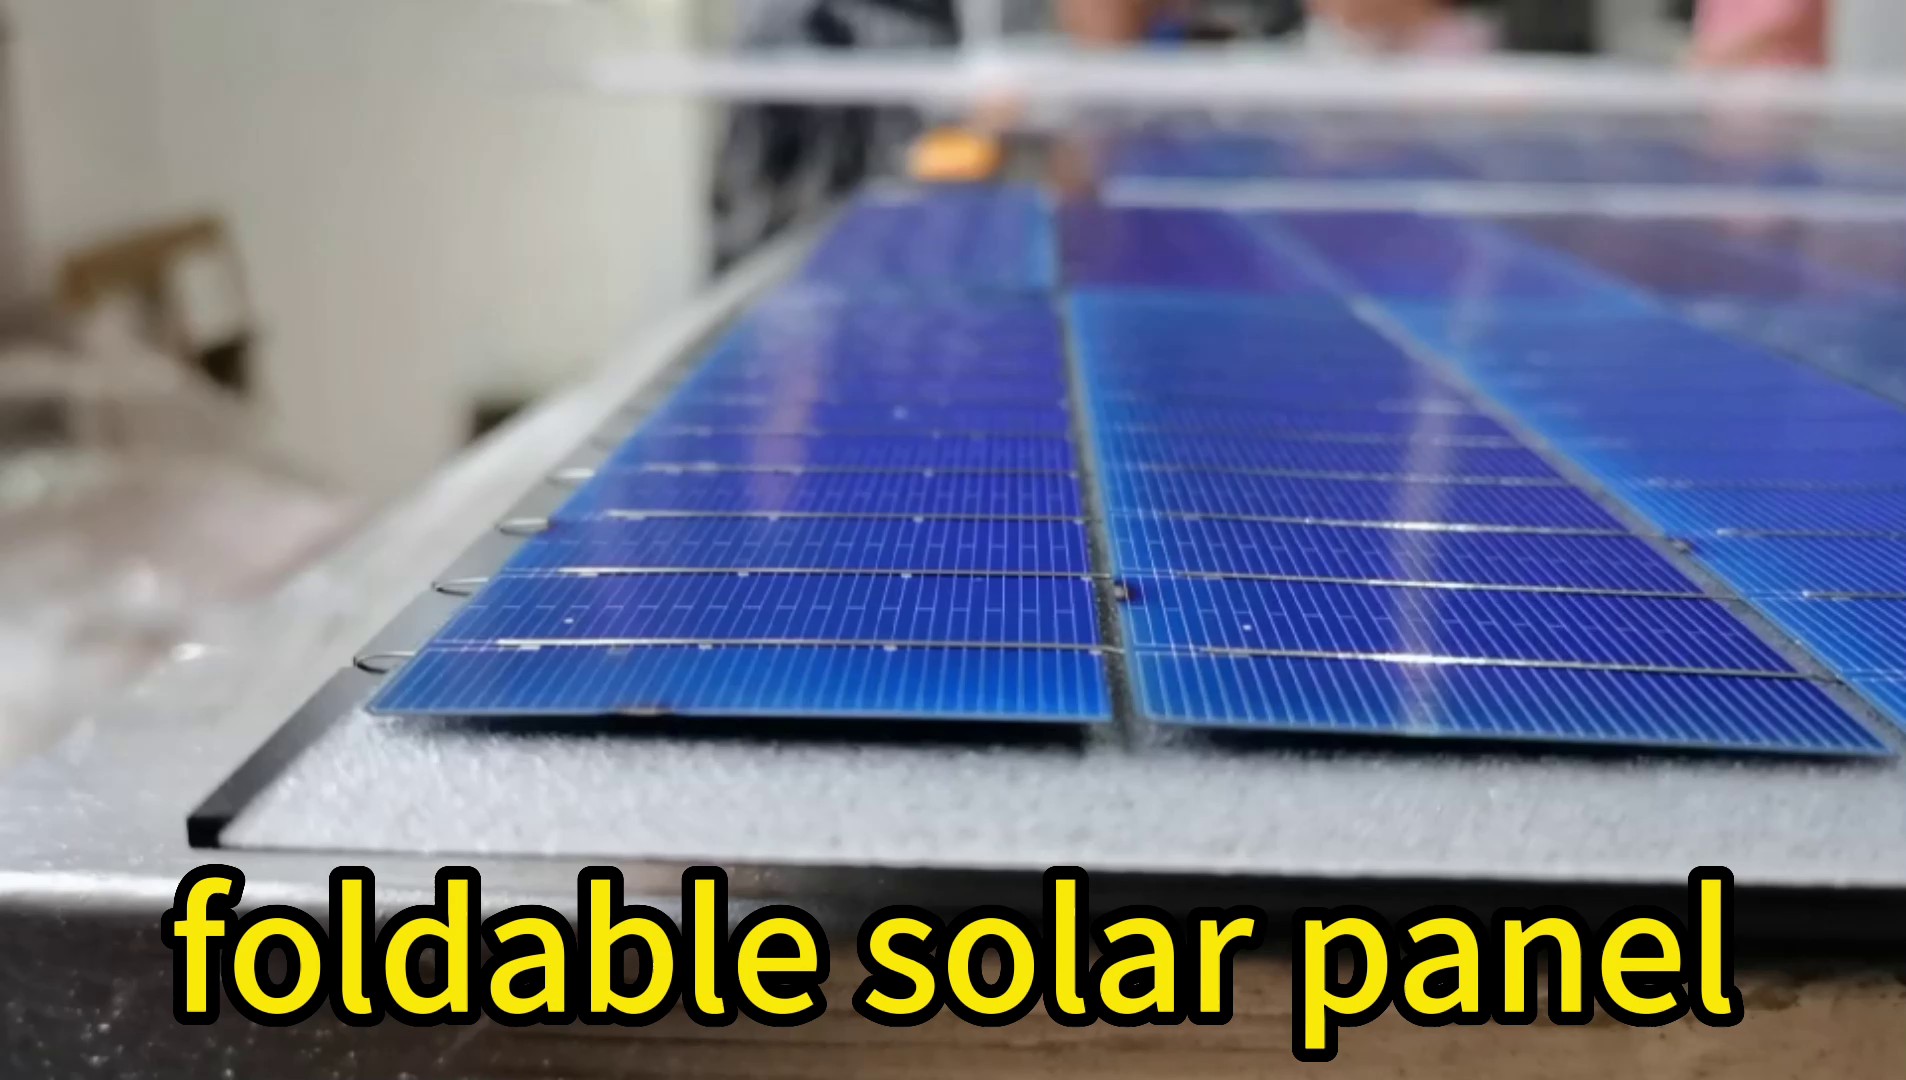 广西大功率20W便携式太阳能折叠充电板价格多少,20W便携式太阳能折叠充电板